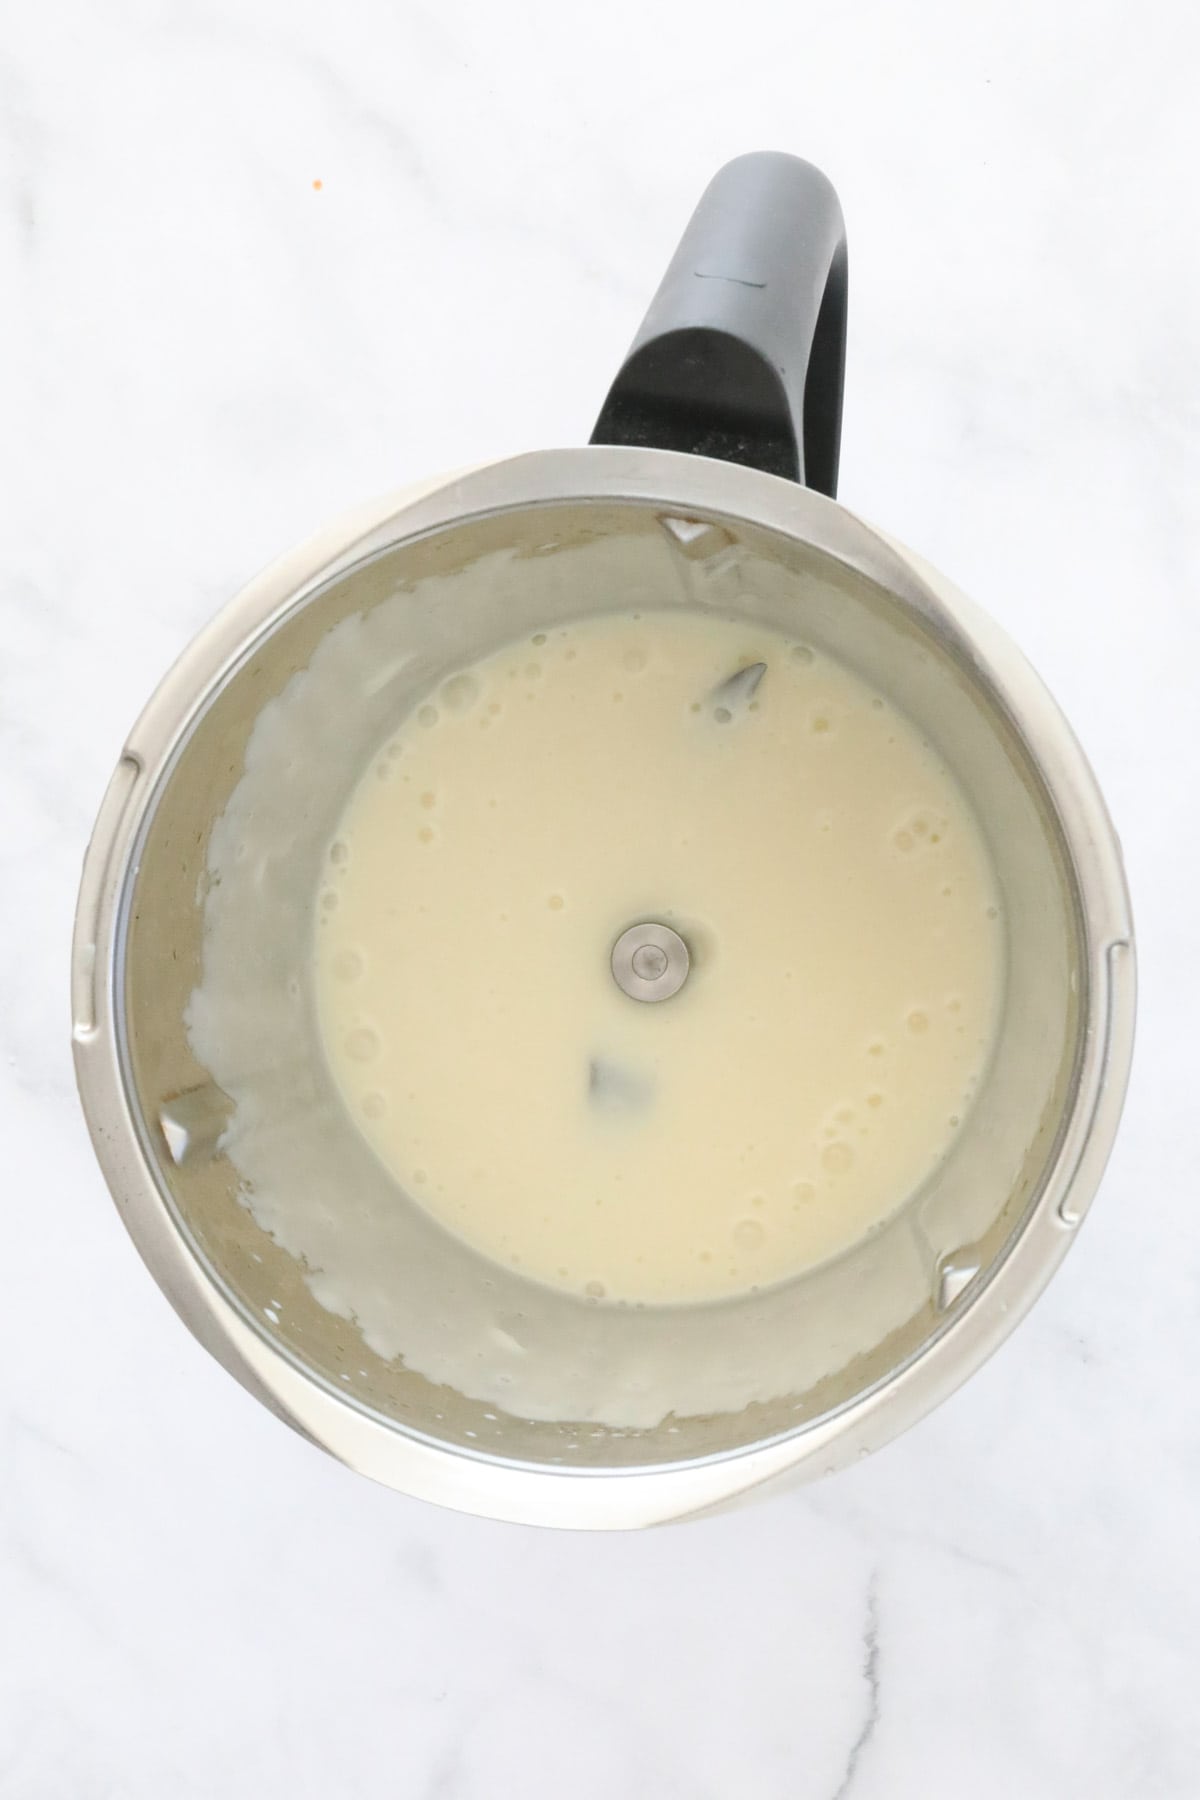 Creamy liquid in a Thermomix.